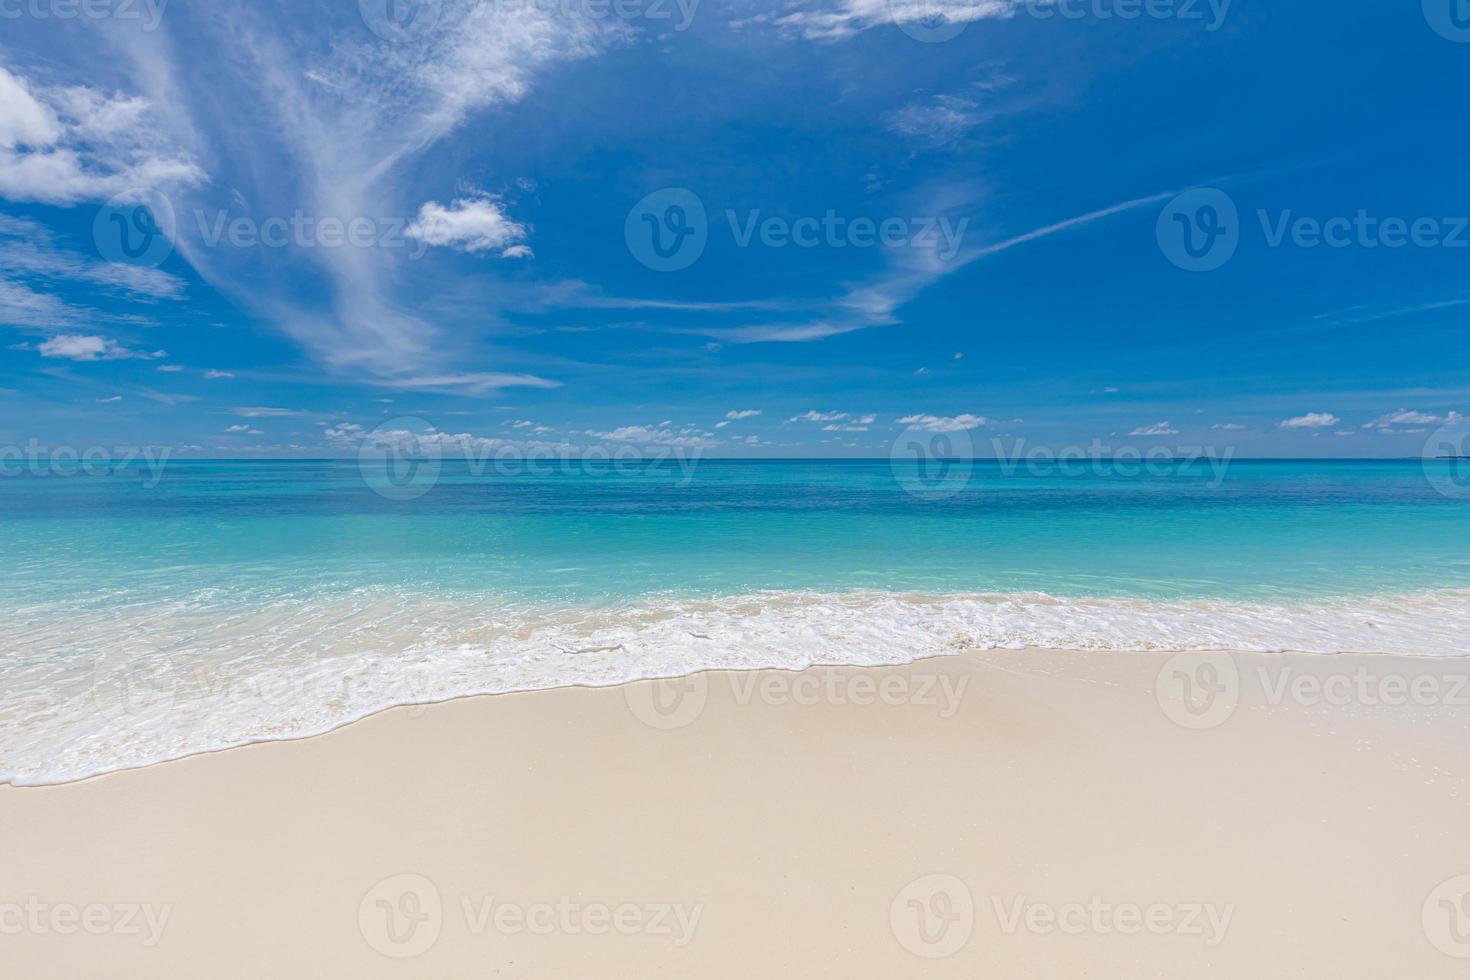 praia tranquila. paisagem de ilha tropical e conceito de céu de areia do mar. ondas suaves espirrando na praia vazia. paisagem exótica, litoral da ilha. natureza pacífica, cenário maravilhoso foto